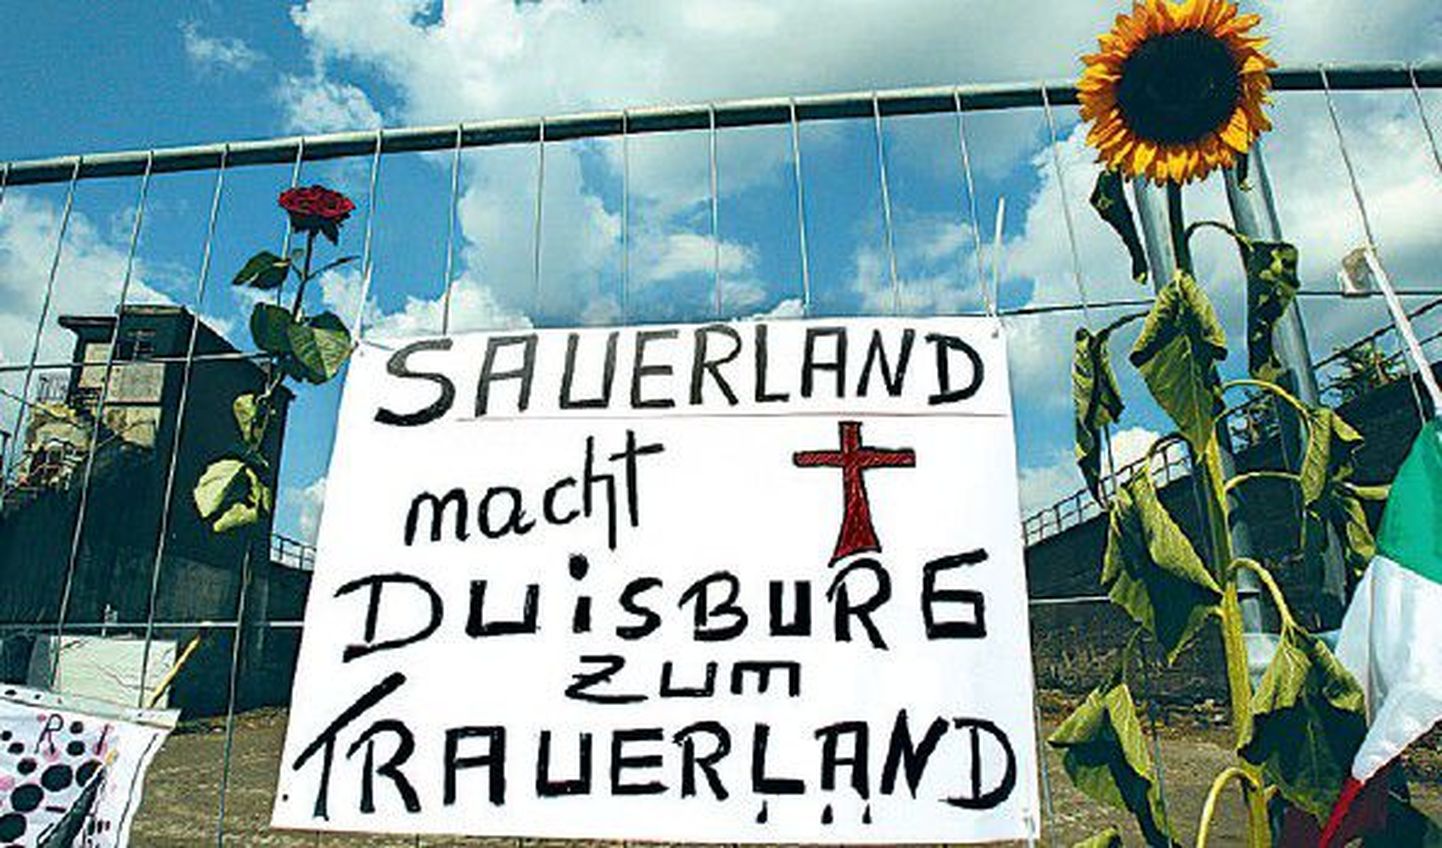 Love Parade’i ohvreid mälestav plakat süüdistab katastroofis Duisburgi linnapead Adolf Sauerlandi.